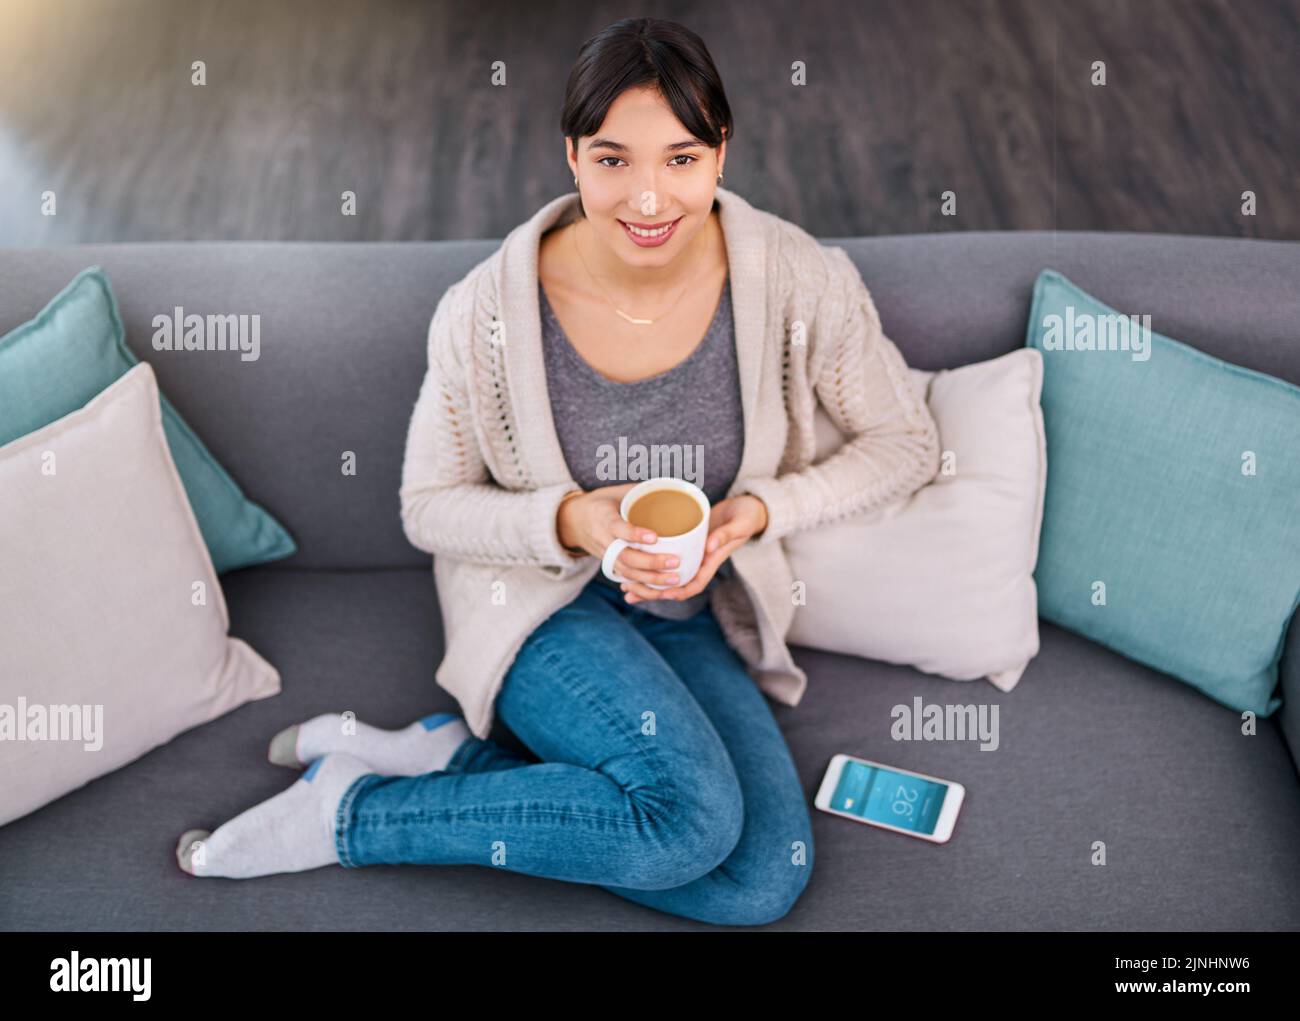 Machte eine frische Kanne Tee. Porträt einer fröhlichen jungen Frau, die tagsüber auf einem Sofa sitzt, während sie zu Hause Kaffee trinkt. Stockfoto